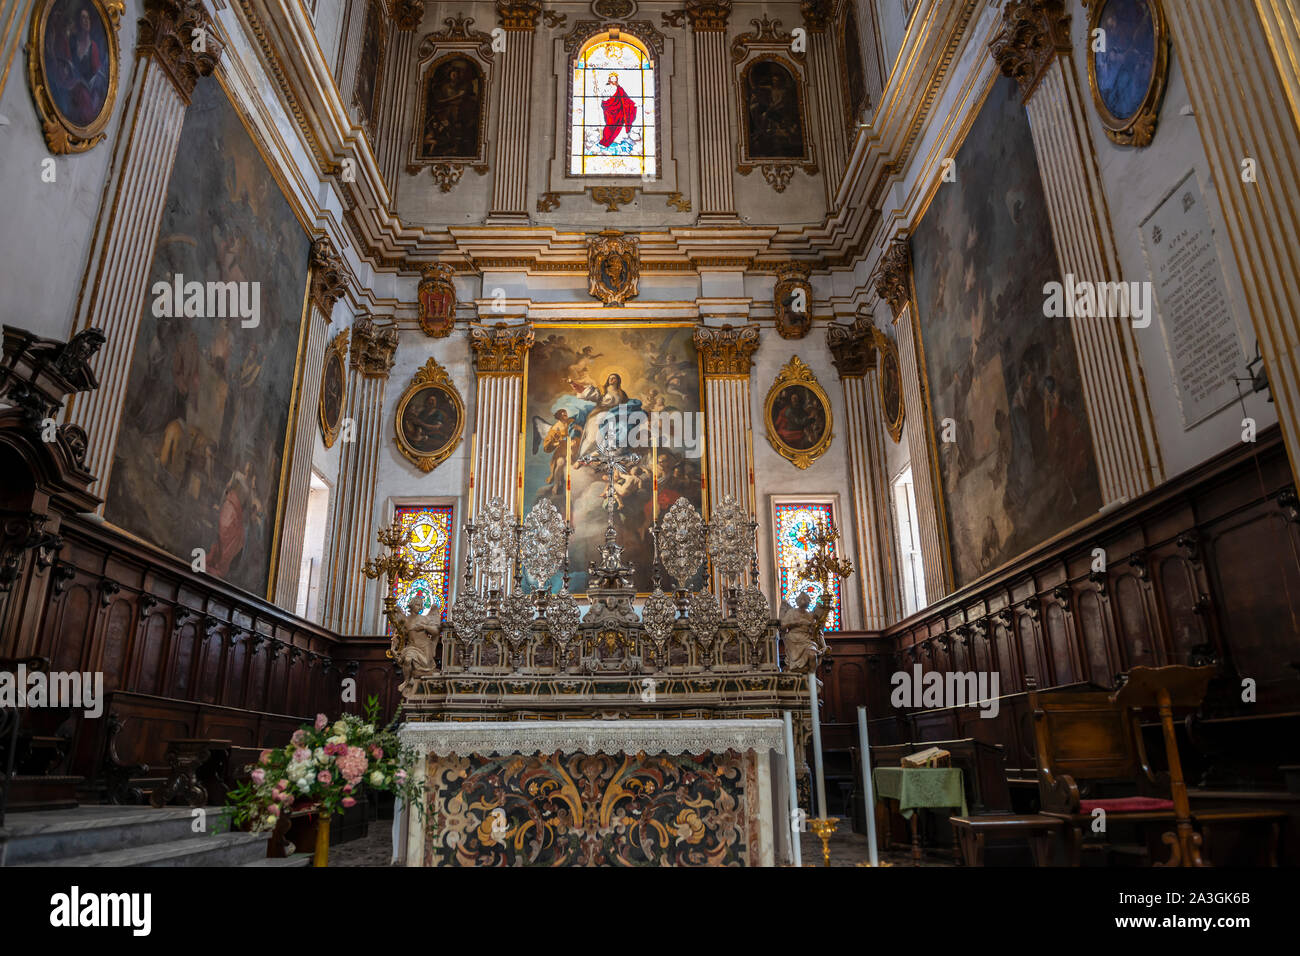 Interior de la Cattedrale di Santa Maria Assunta (Iglesia de Santa María de la Asunción) en la Piazza del Duomo en Lecce, Apulia (Puglia) en el sur de Italia Foto de stock